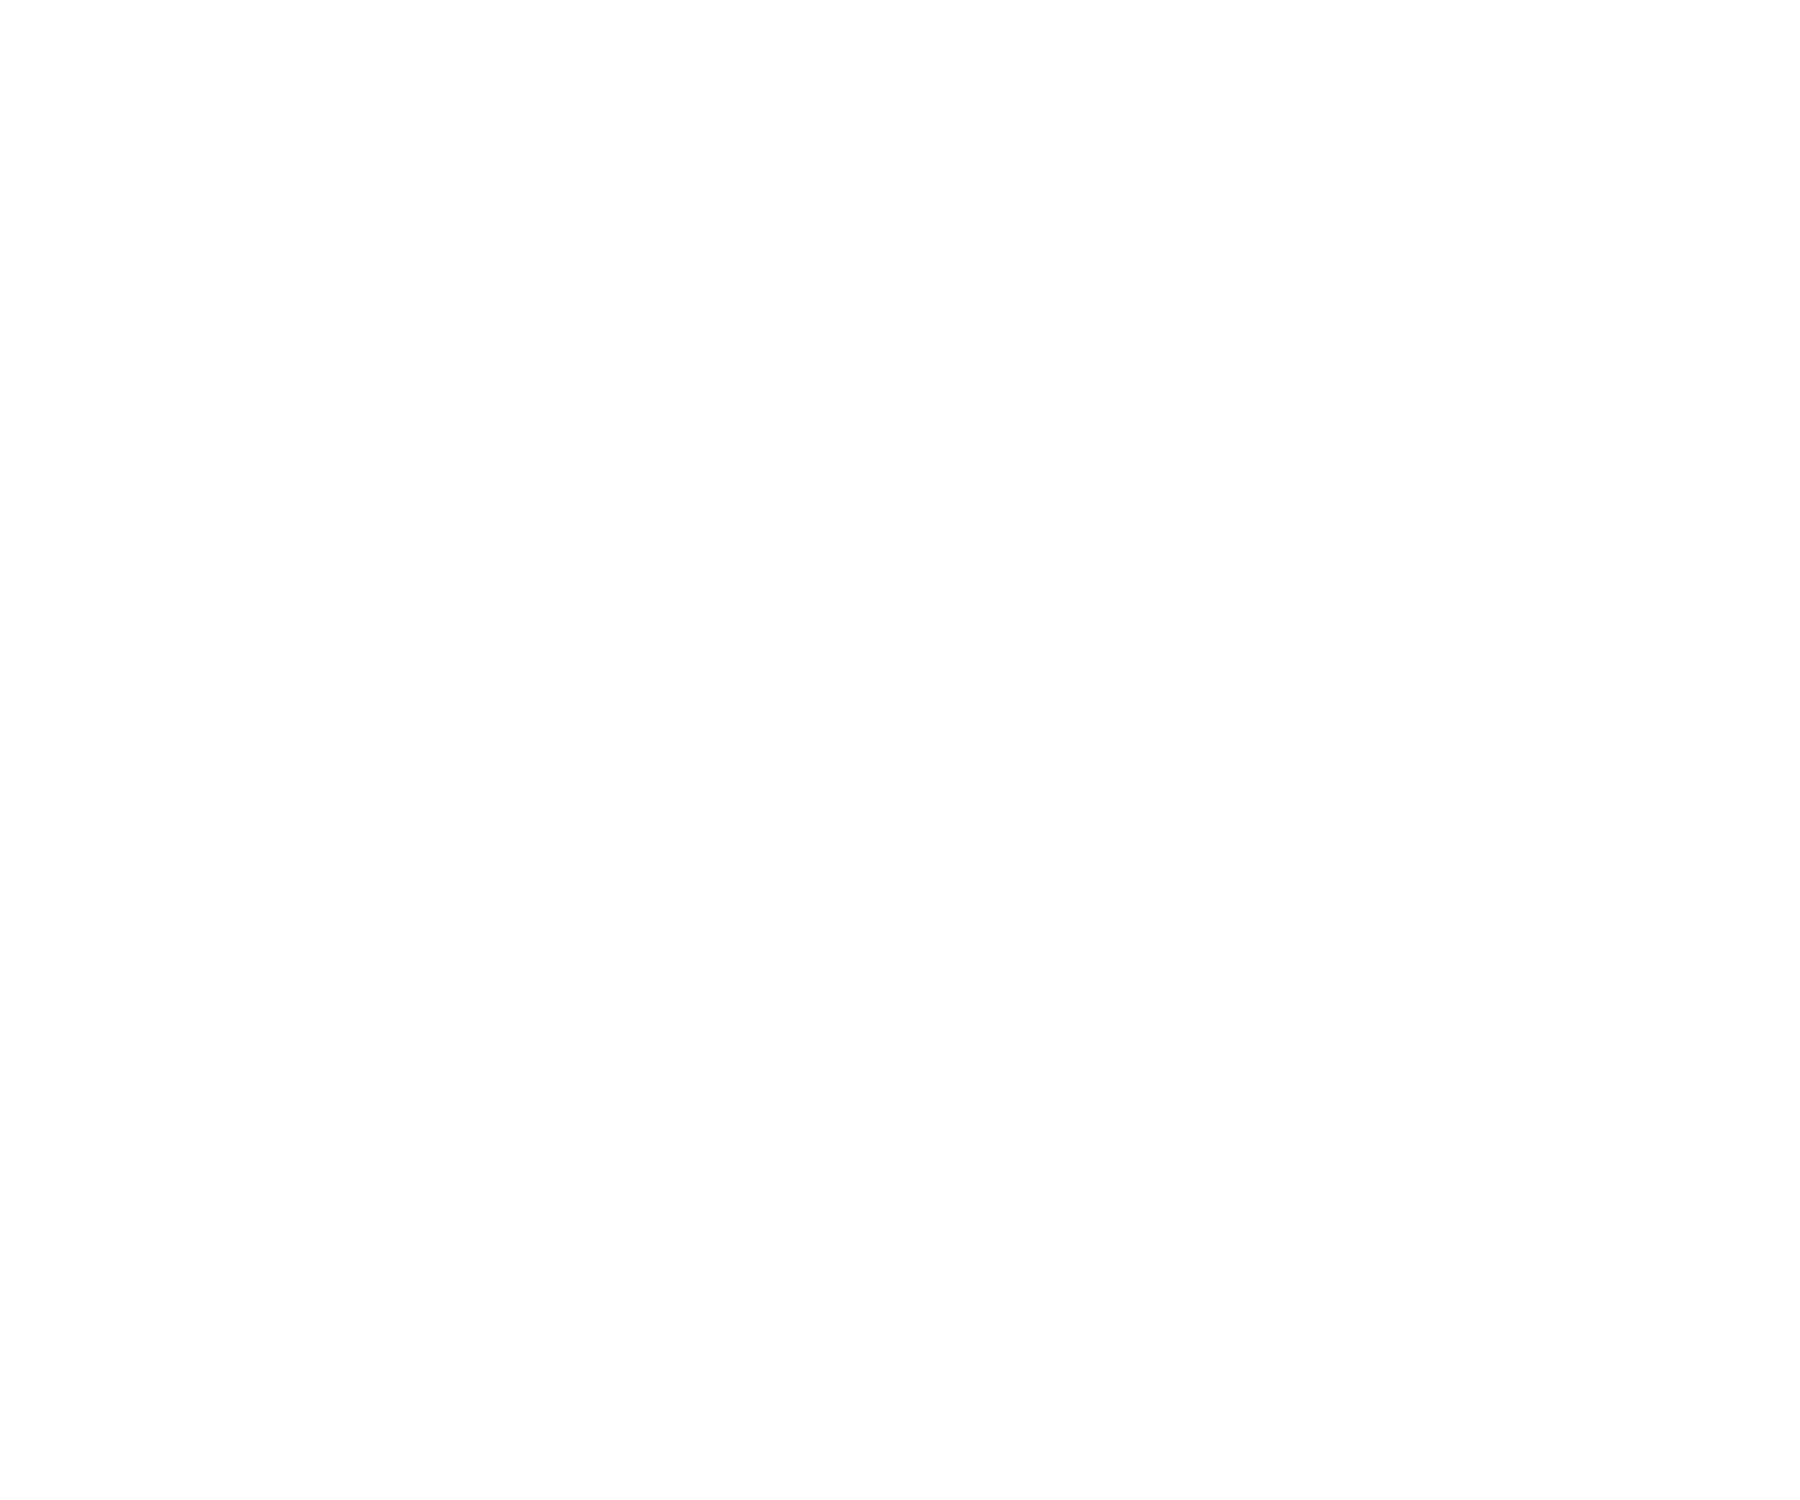 Mezcal Tequila Cantina